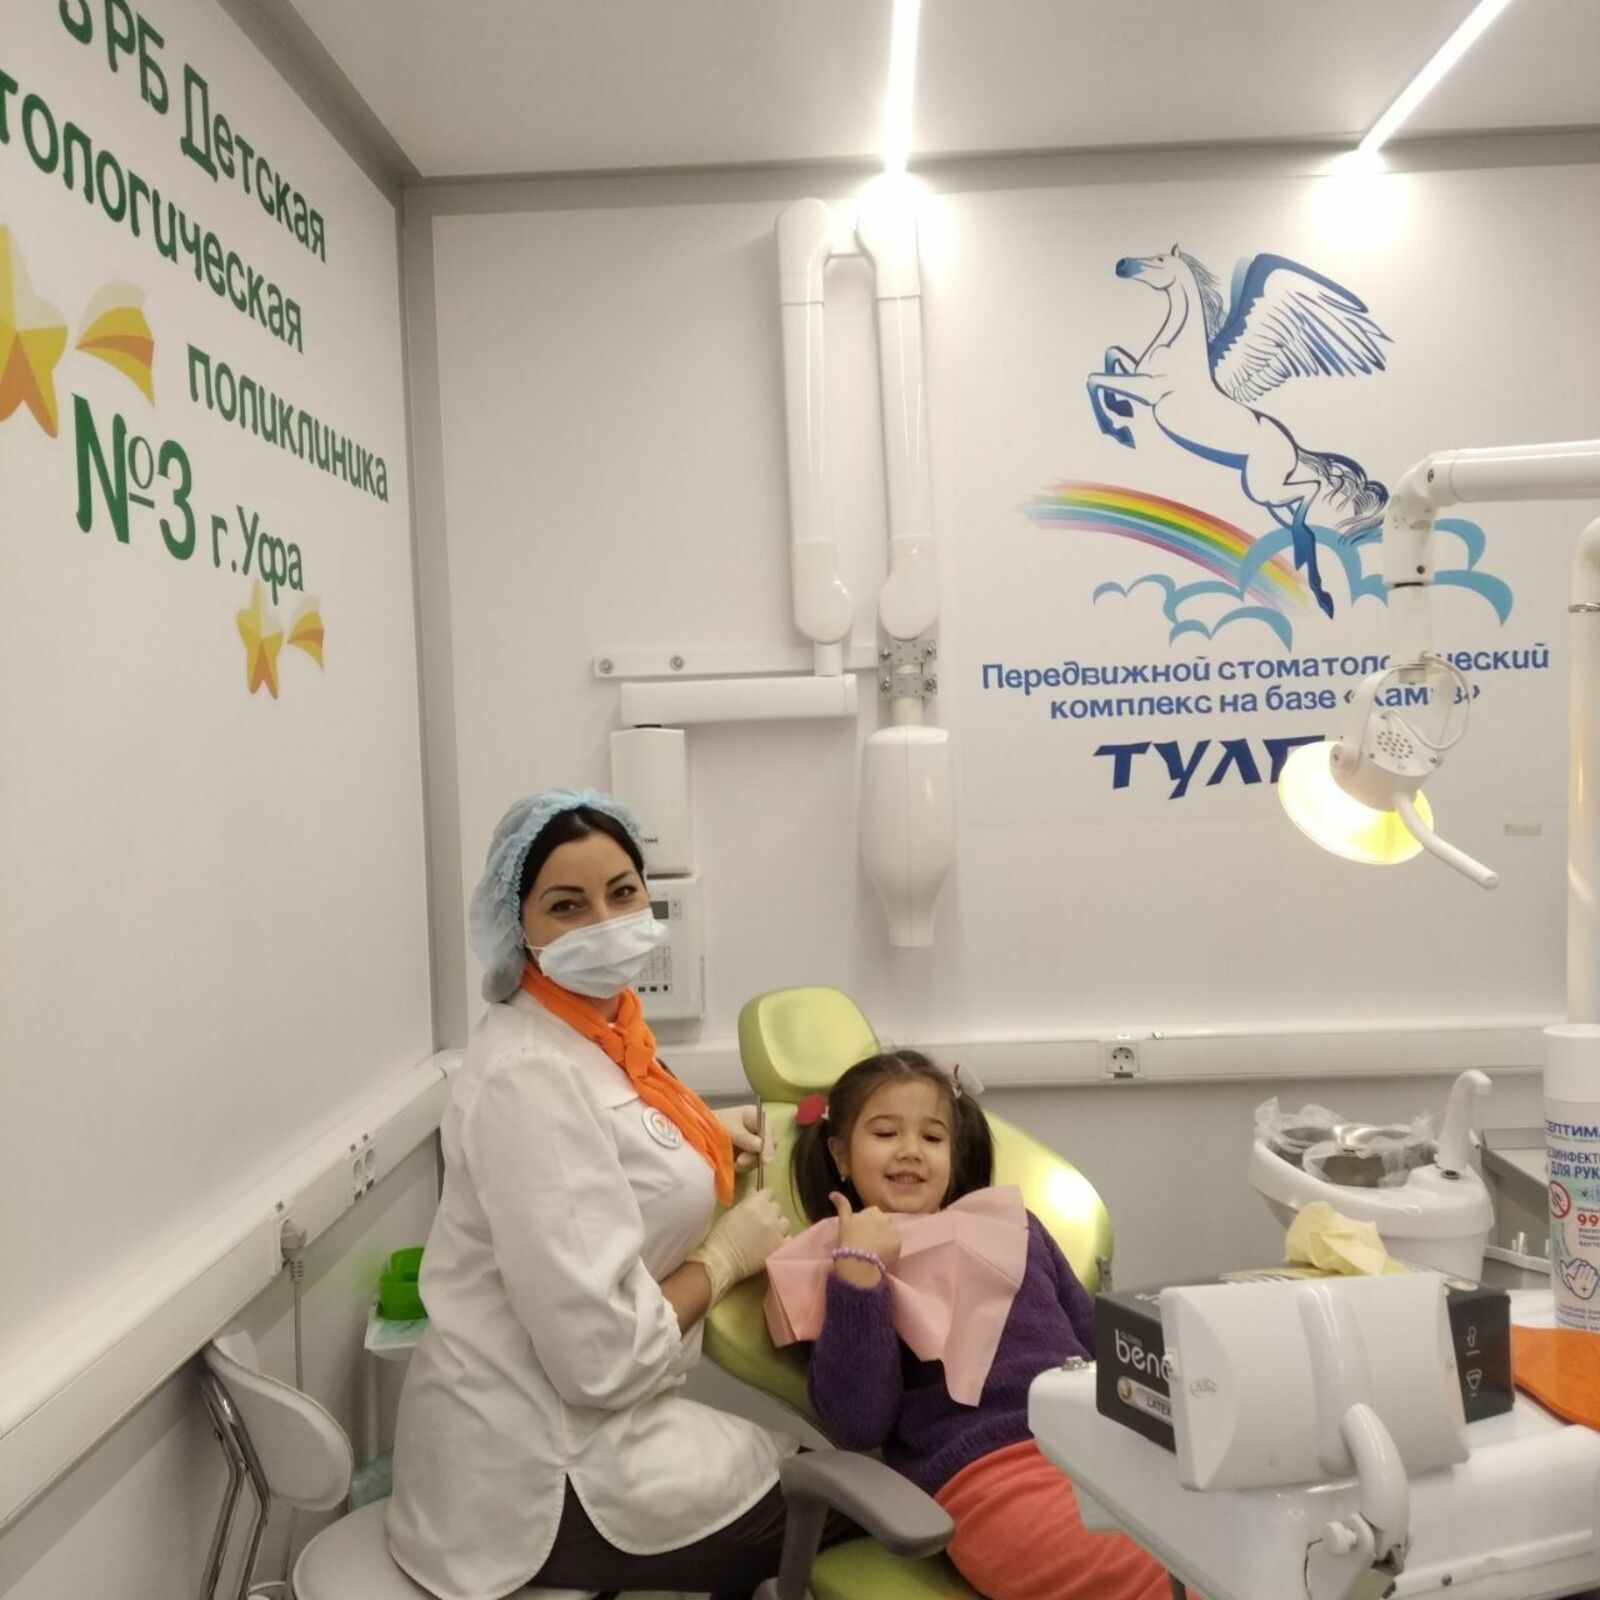 Римма ГАНИЕВА  Врач-стоматолог уфимской детской стоматполиклиники № 3 Лиана Бабаджанян